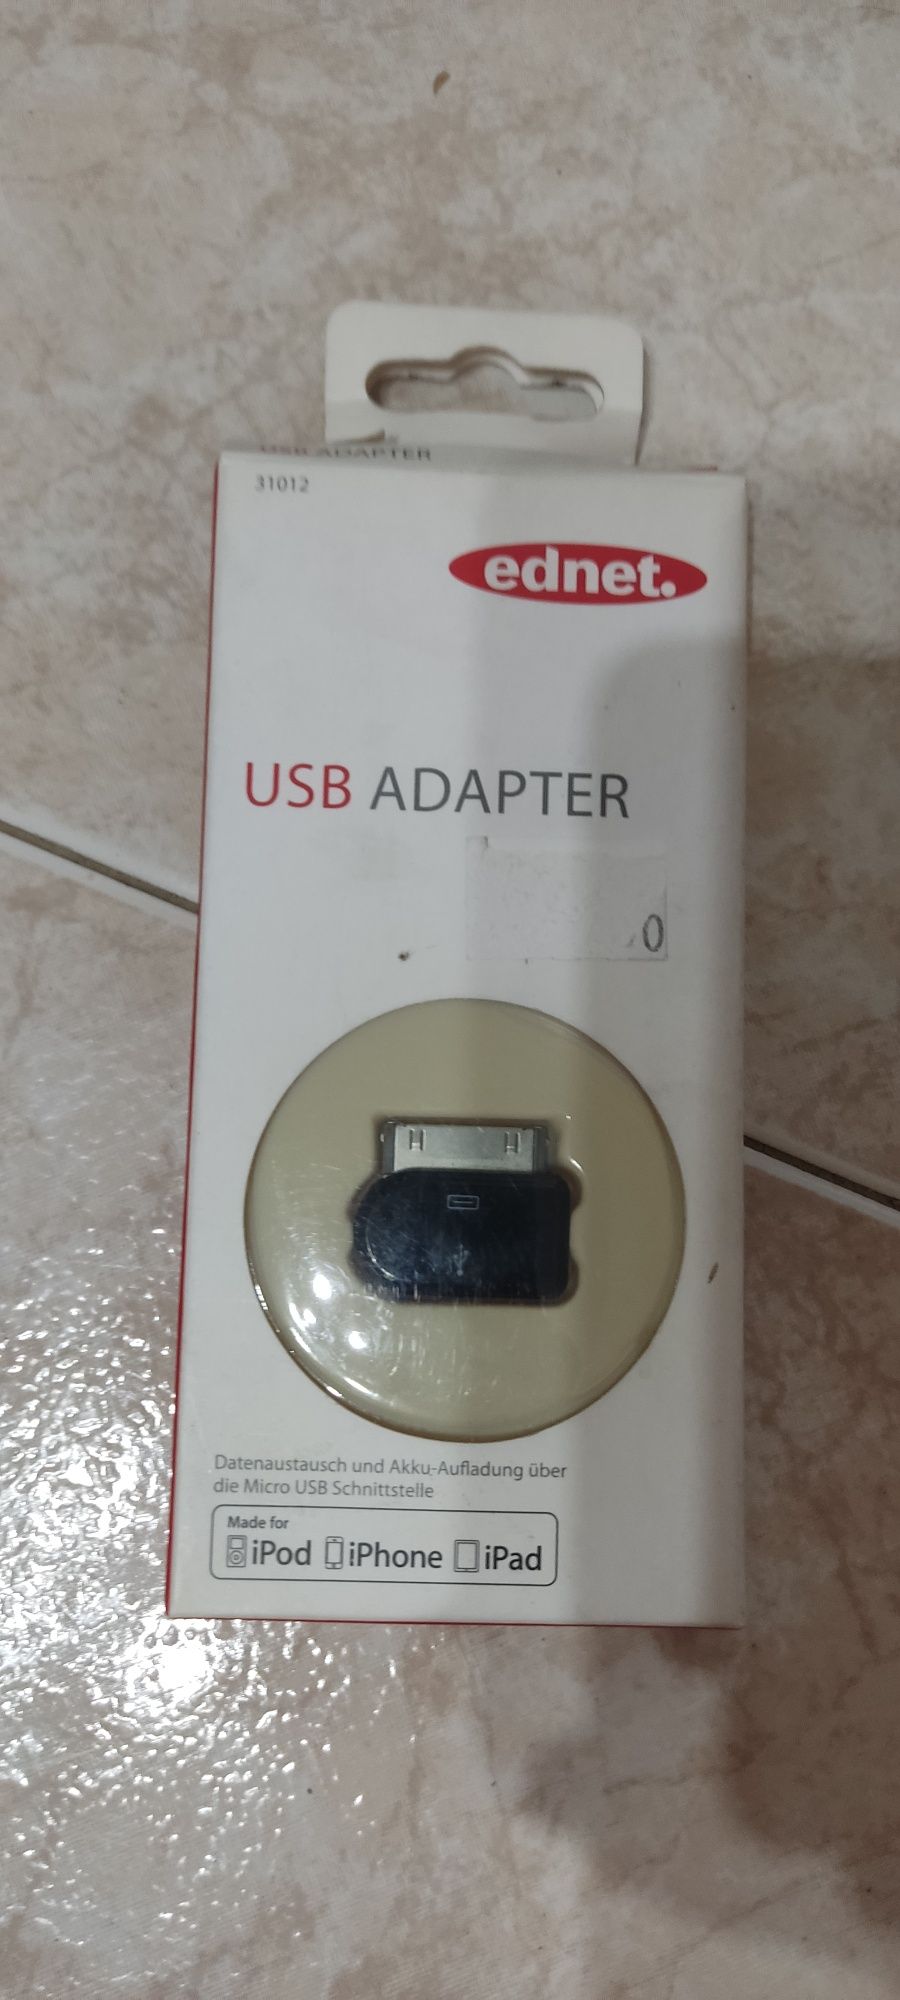 Vendo adaptador USB p/ iPod/iPhone/iPad